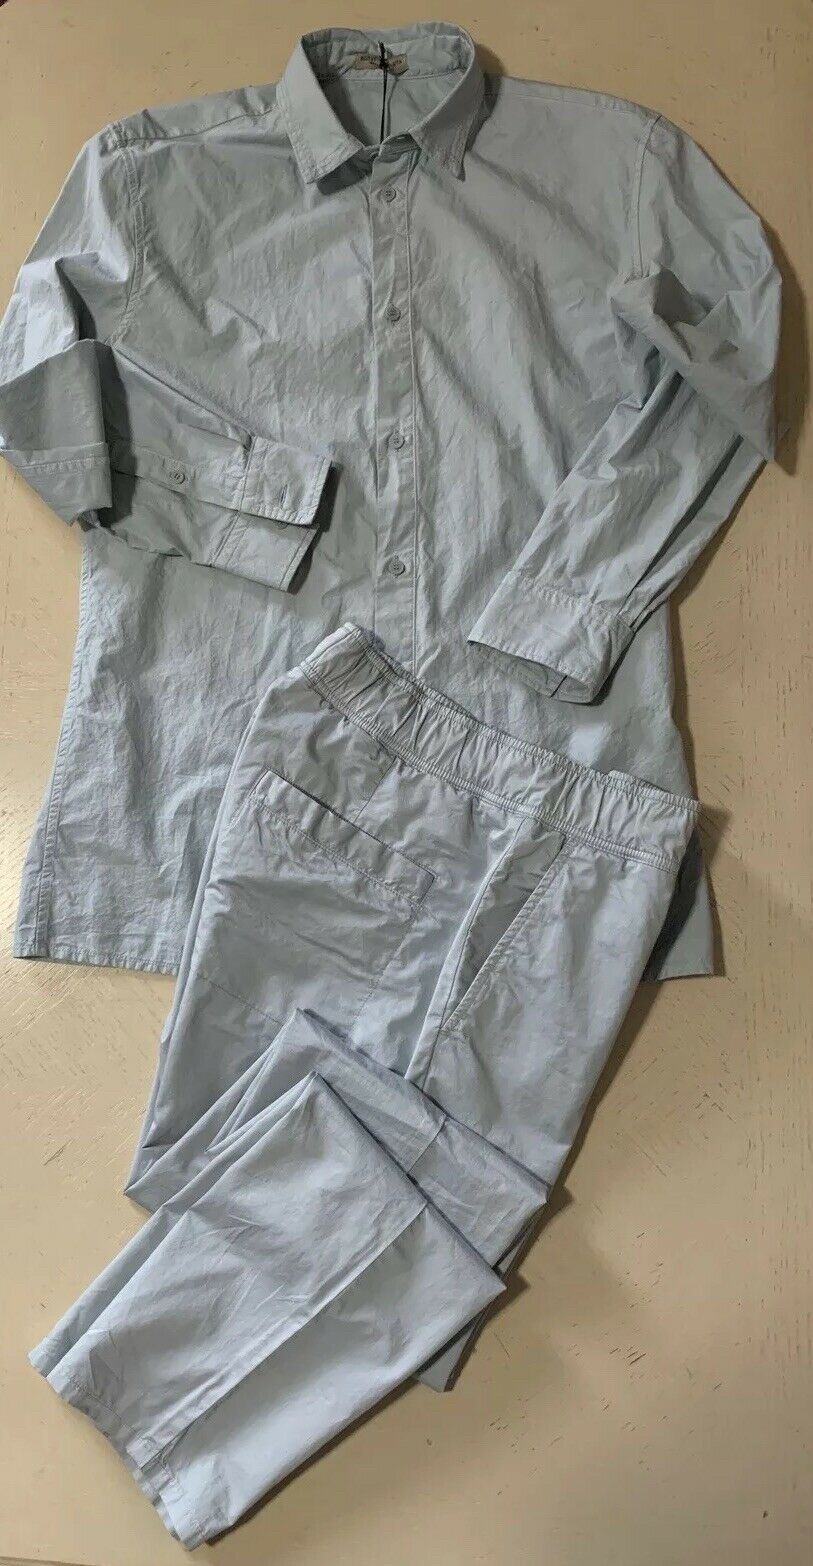 Новый мужской костюм Bottega Veneta (рубашка и брюки), цвет Artic, размер 30 США/46 ЕС, стоимостью 1190 долларов США.